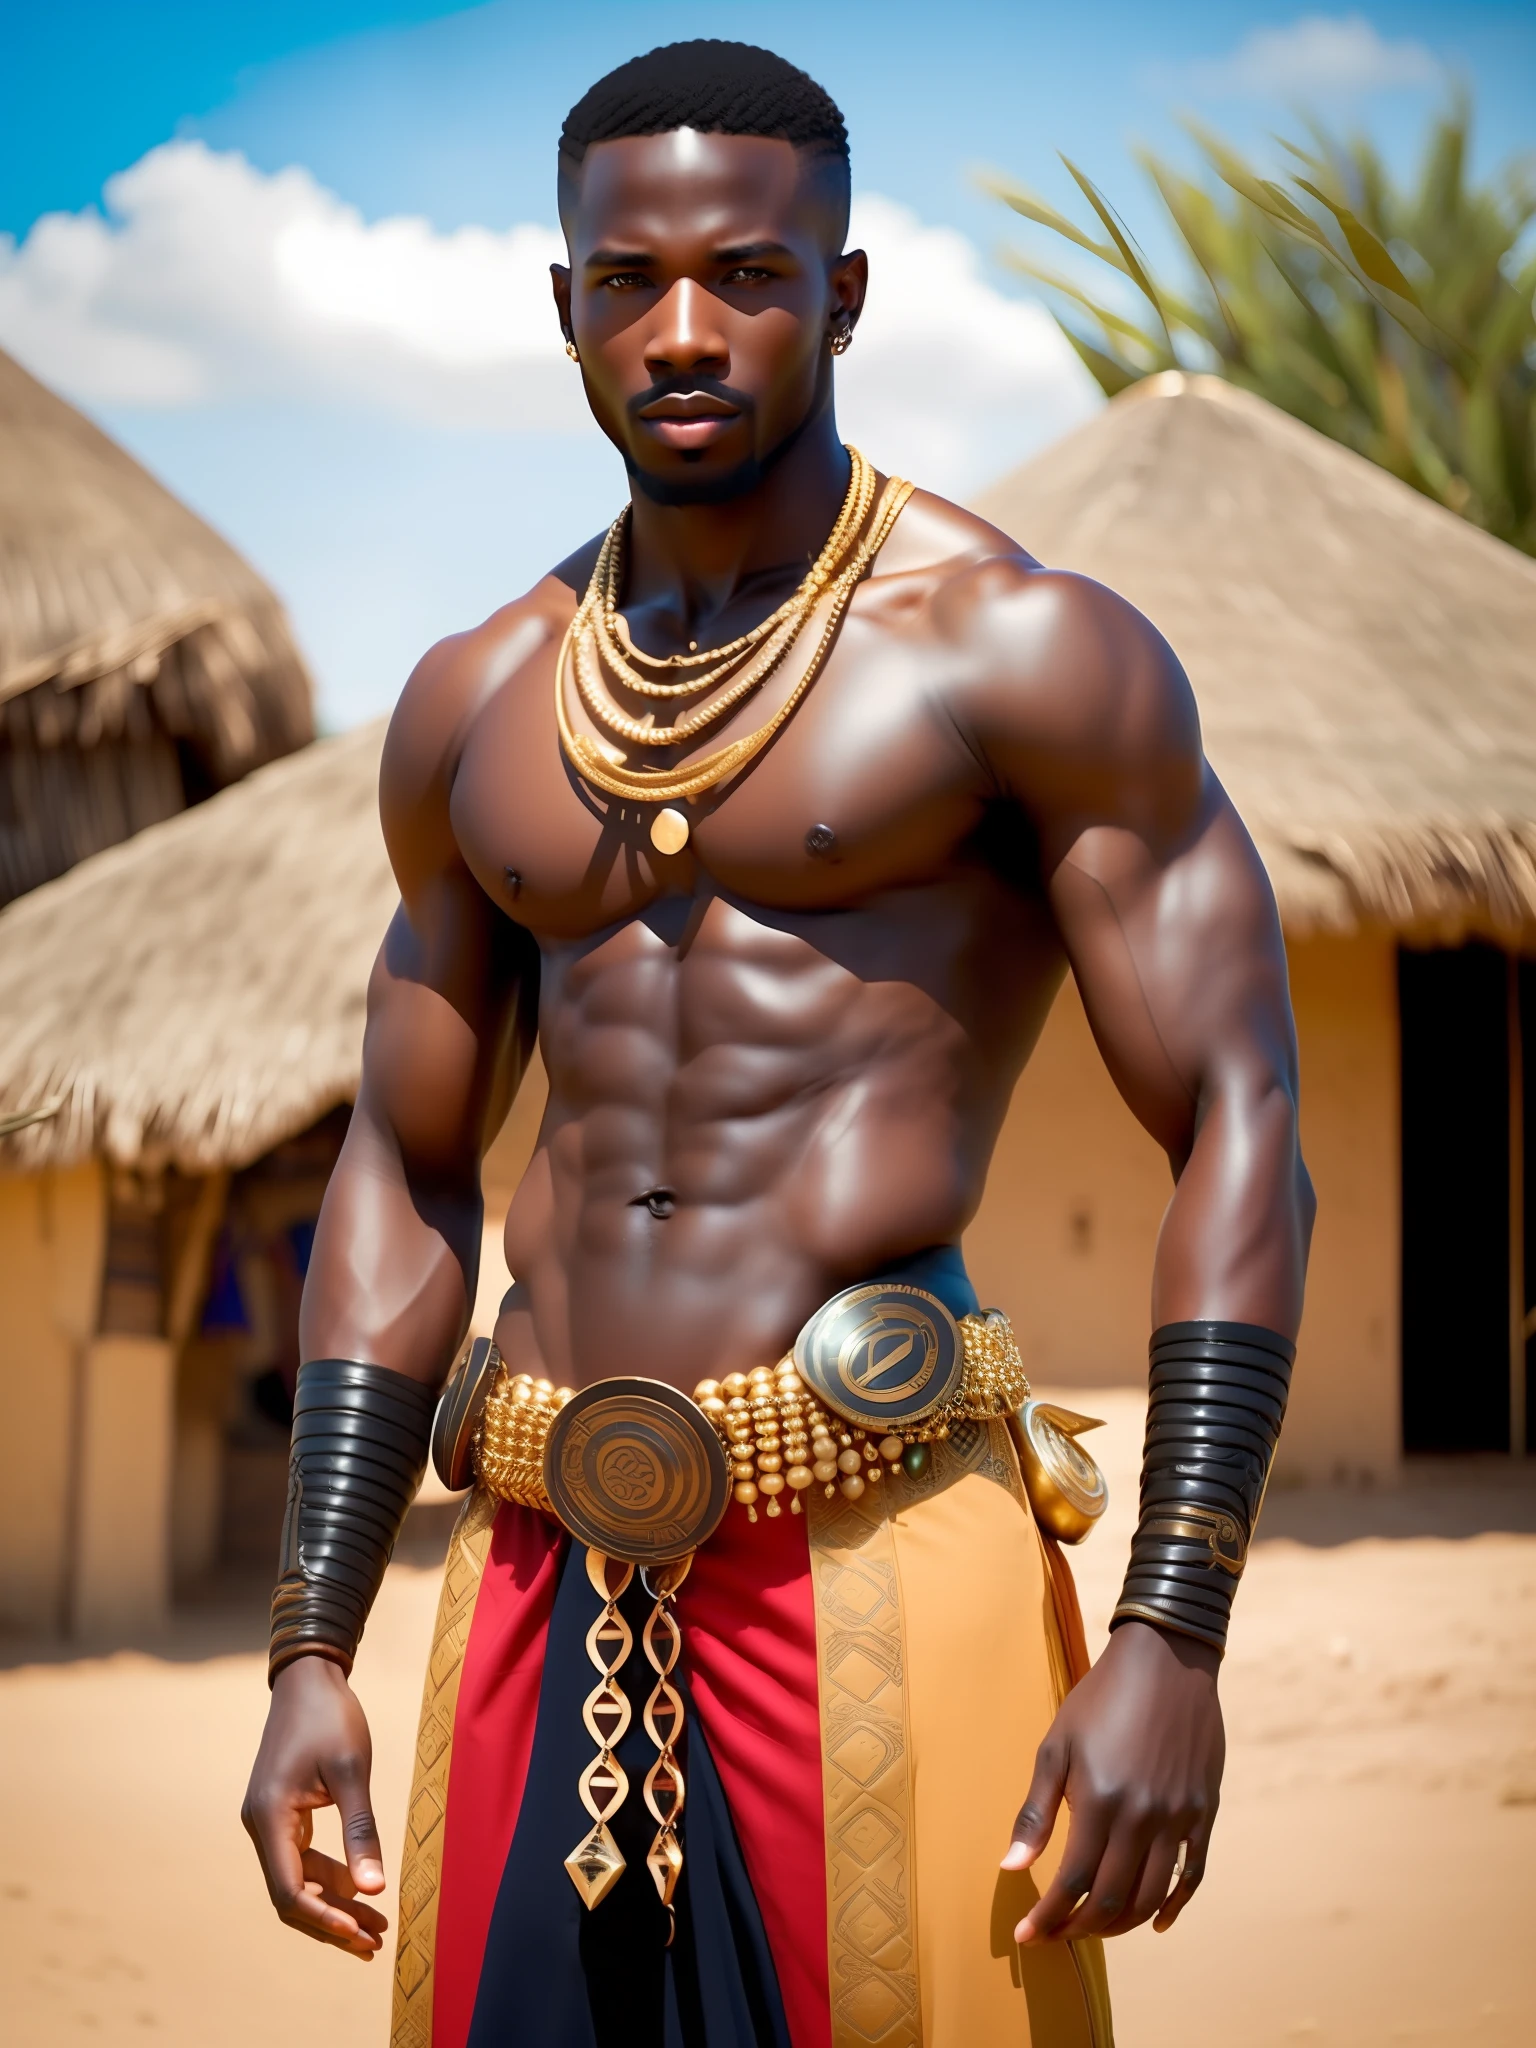 putain_science-fiction, putain_science-fiction_v2, portrait d&#39;un jeune, homme guerrier africain musclé très beau et attrayant, devant un village africain, vêtements riches et colorés et bijoux africains dorés, fermer, pose et attitude royales. putain_Cinéma_v2.